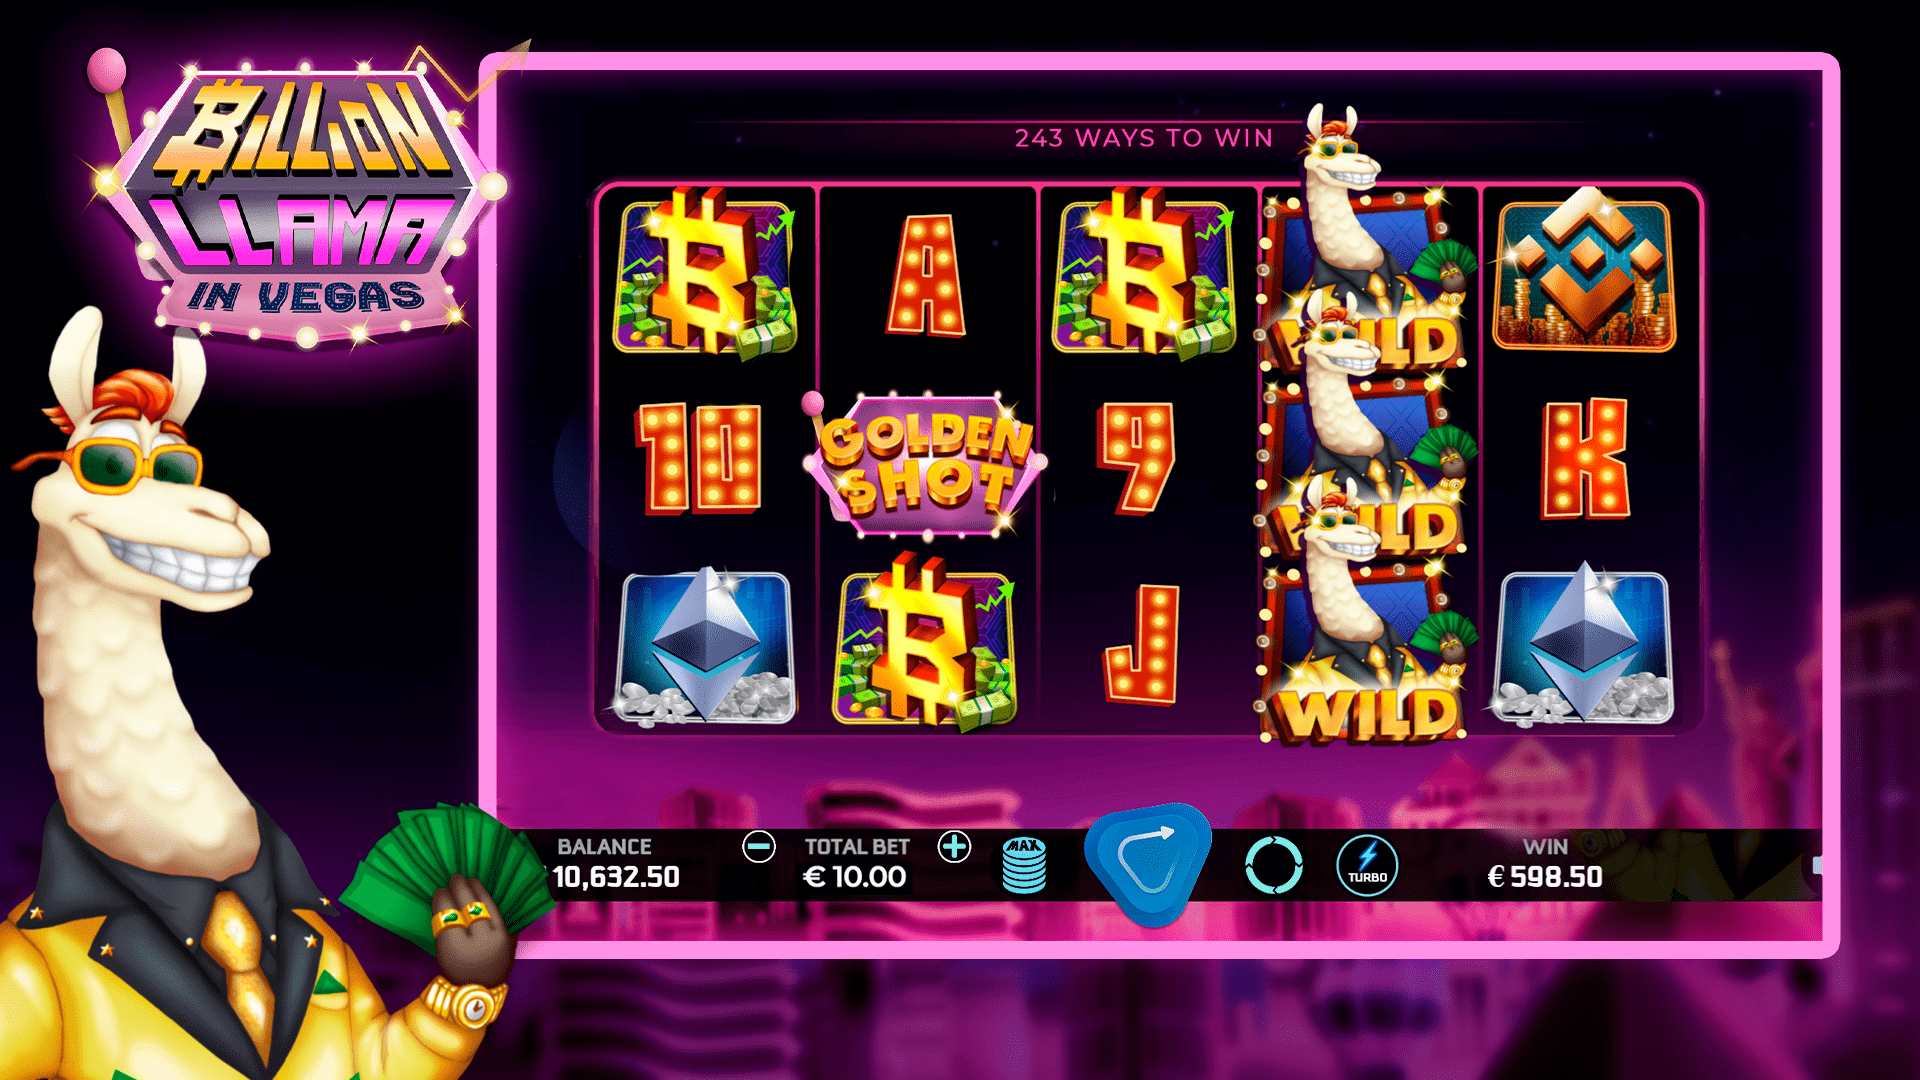 New slot released: Billion Llama in Vegas! - Caleta Gaming